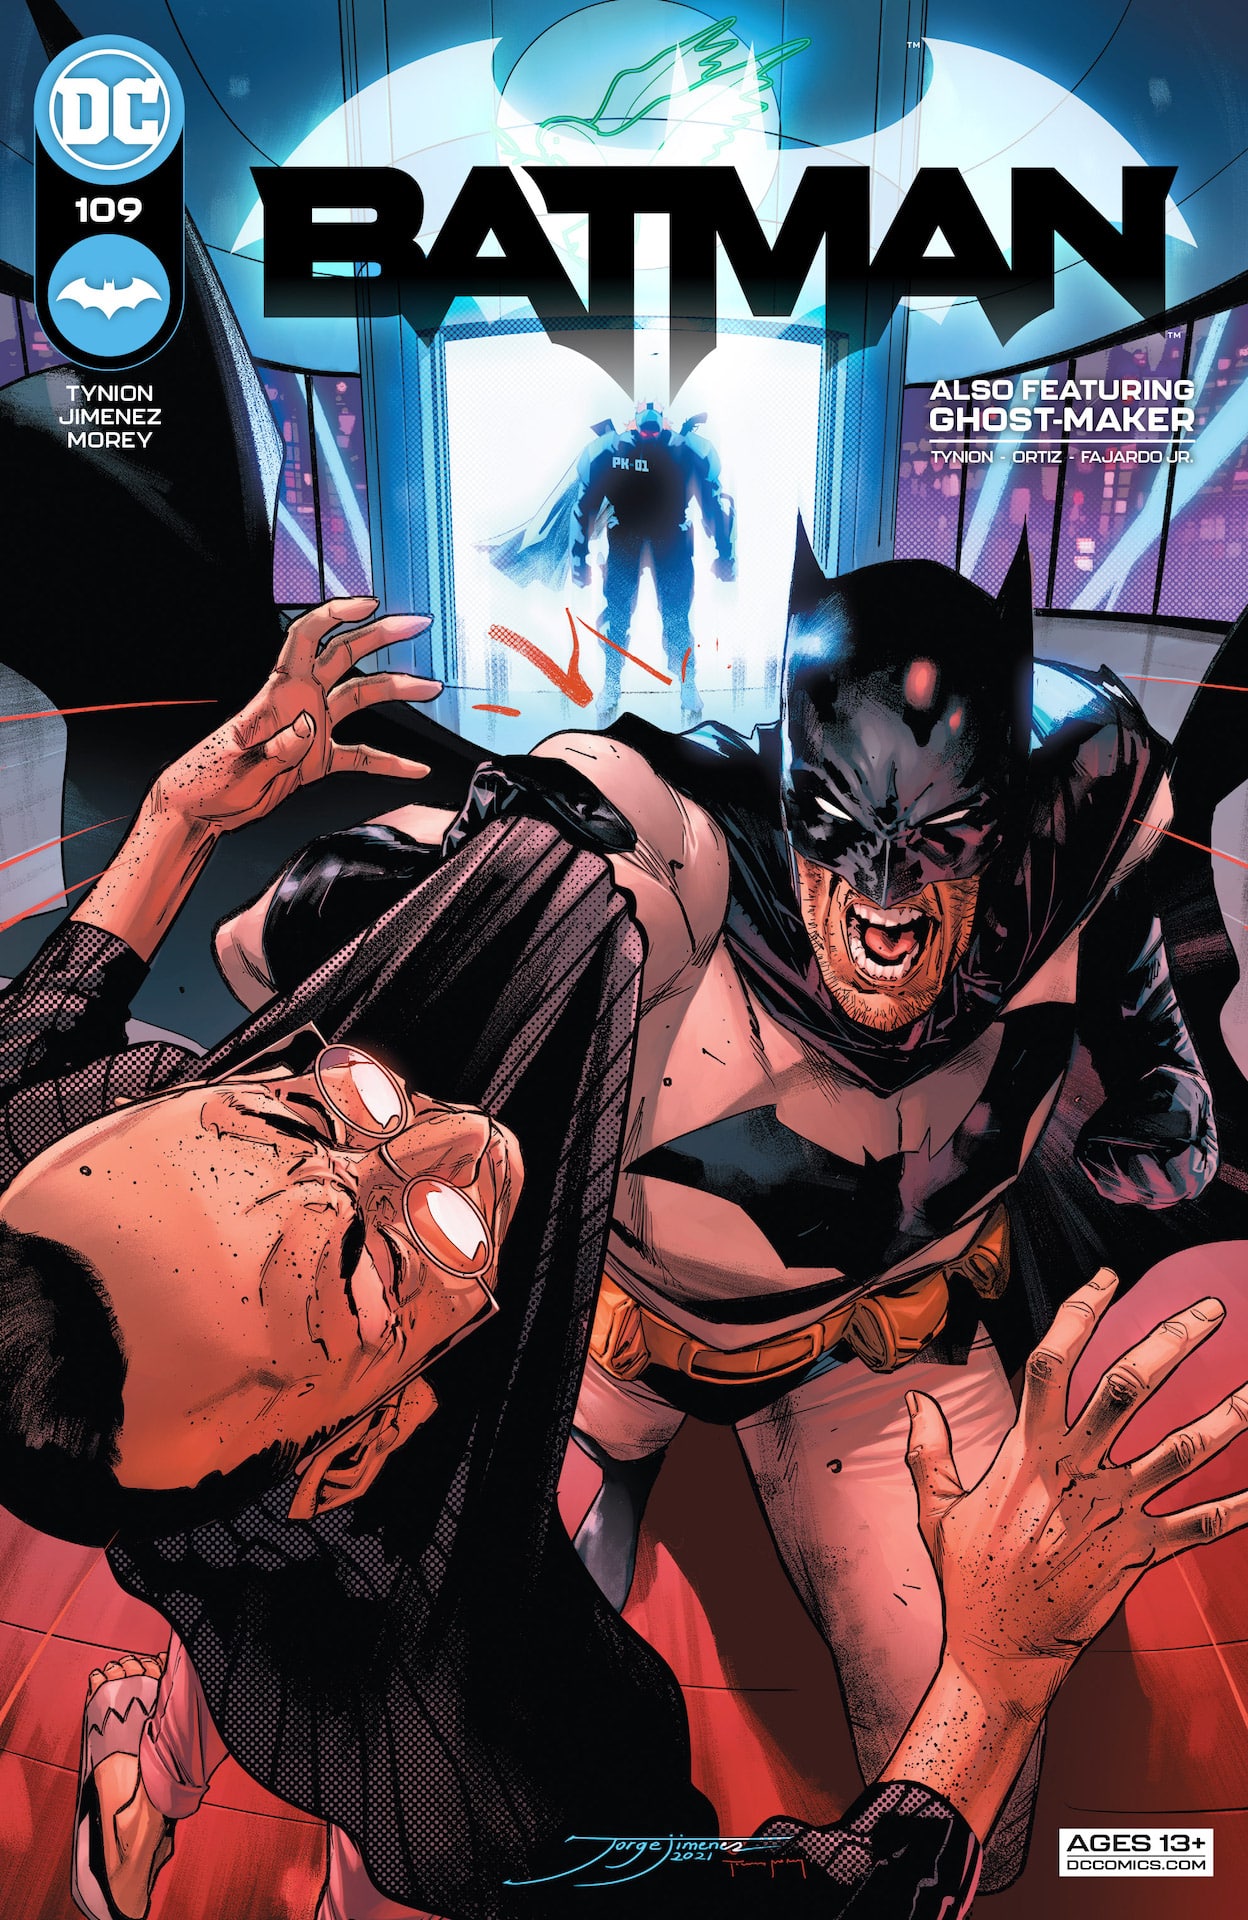 DC Preview: Batman #109